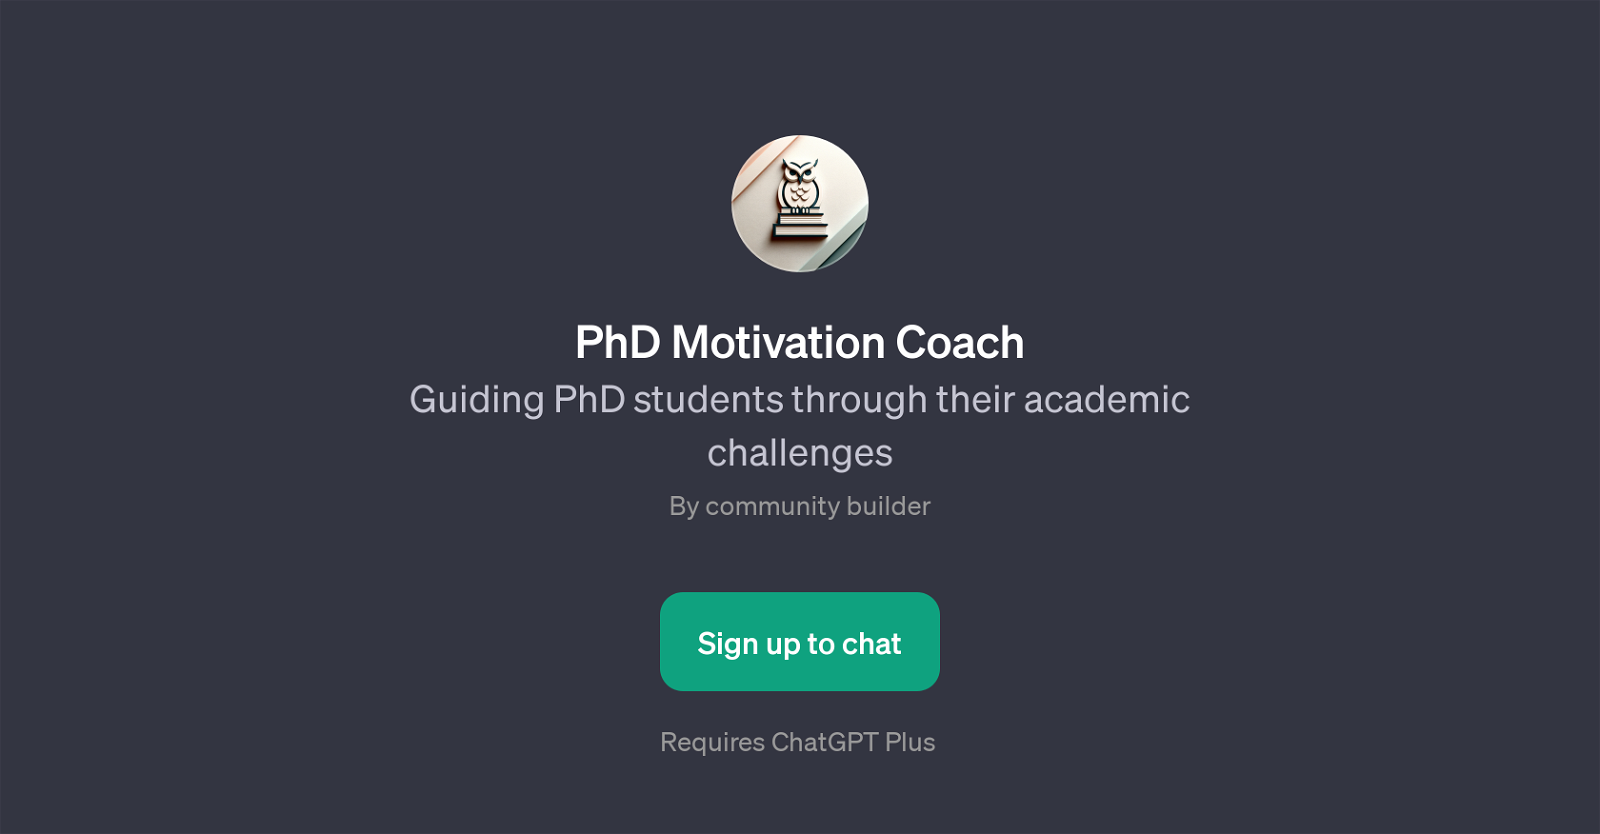 PhD Motivation Coach website